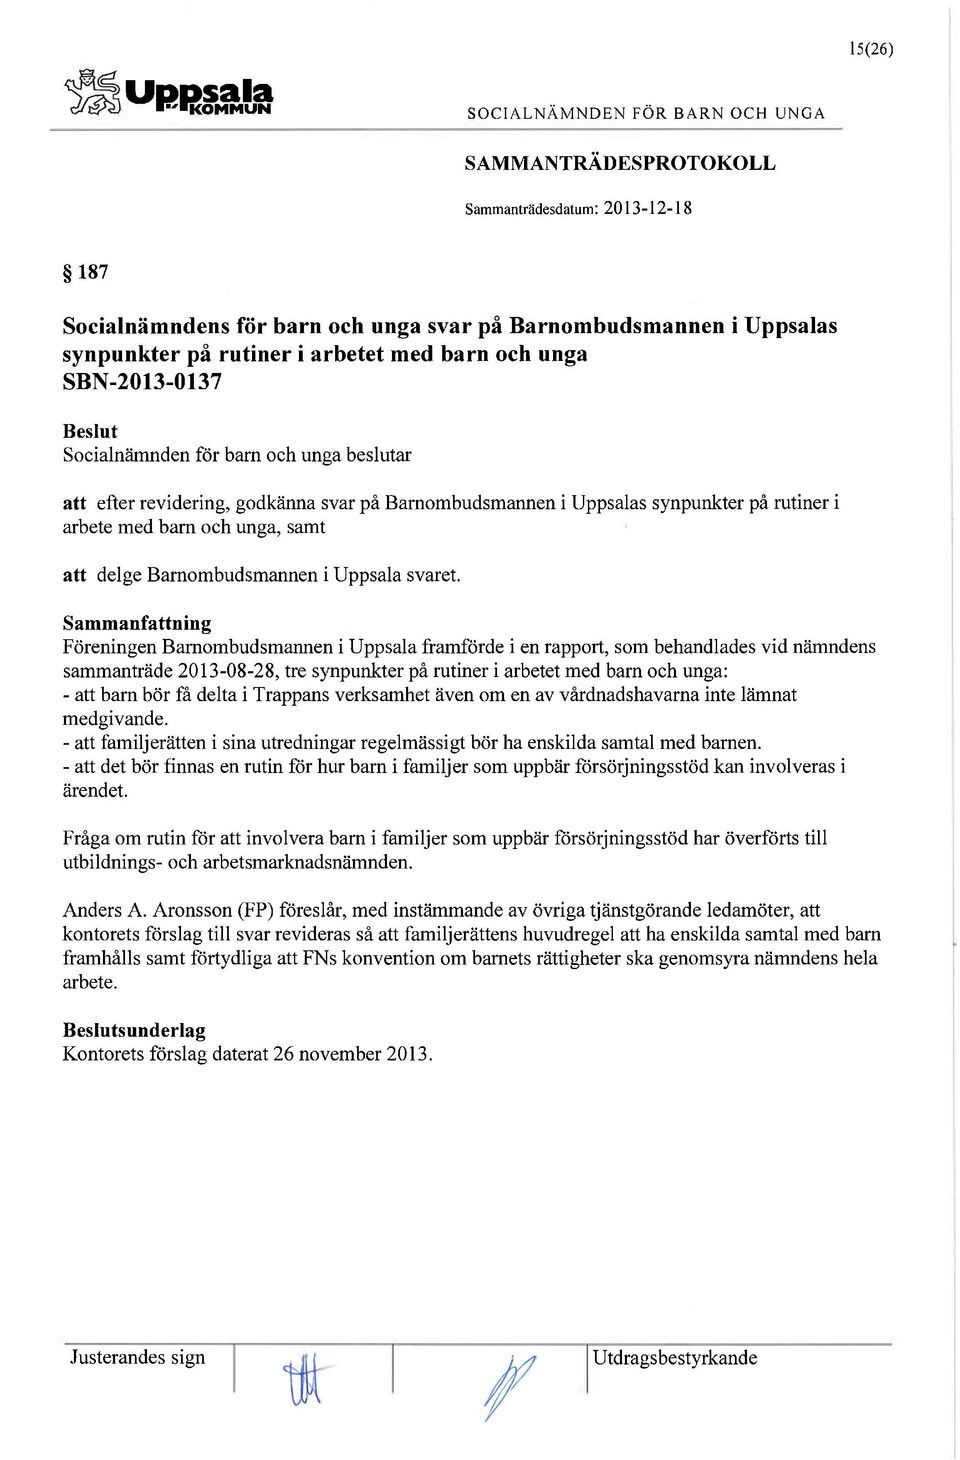 Föreningen Barnombudsmannen i Uppsala framförde i en rapport, som behandlades vid nämndens sammanträde 2013-08-28, tre synpunkter på rutiner i arbetet med bam och unga: - att bam bör få delta i